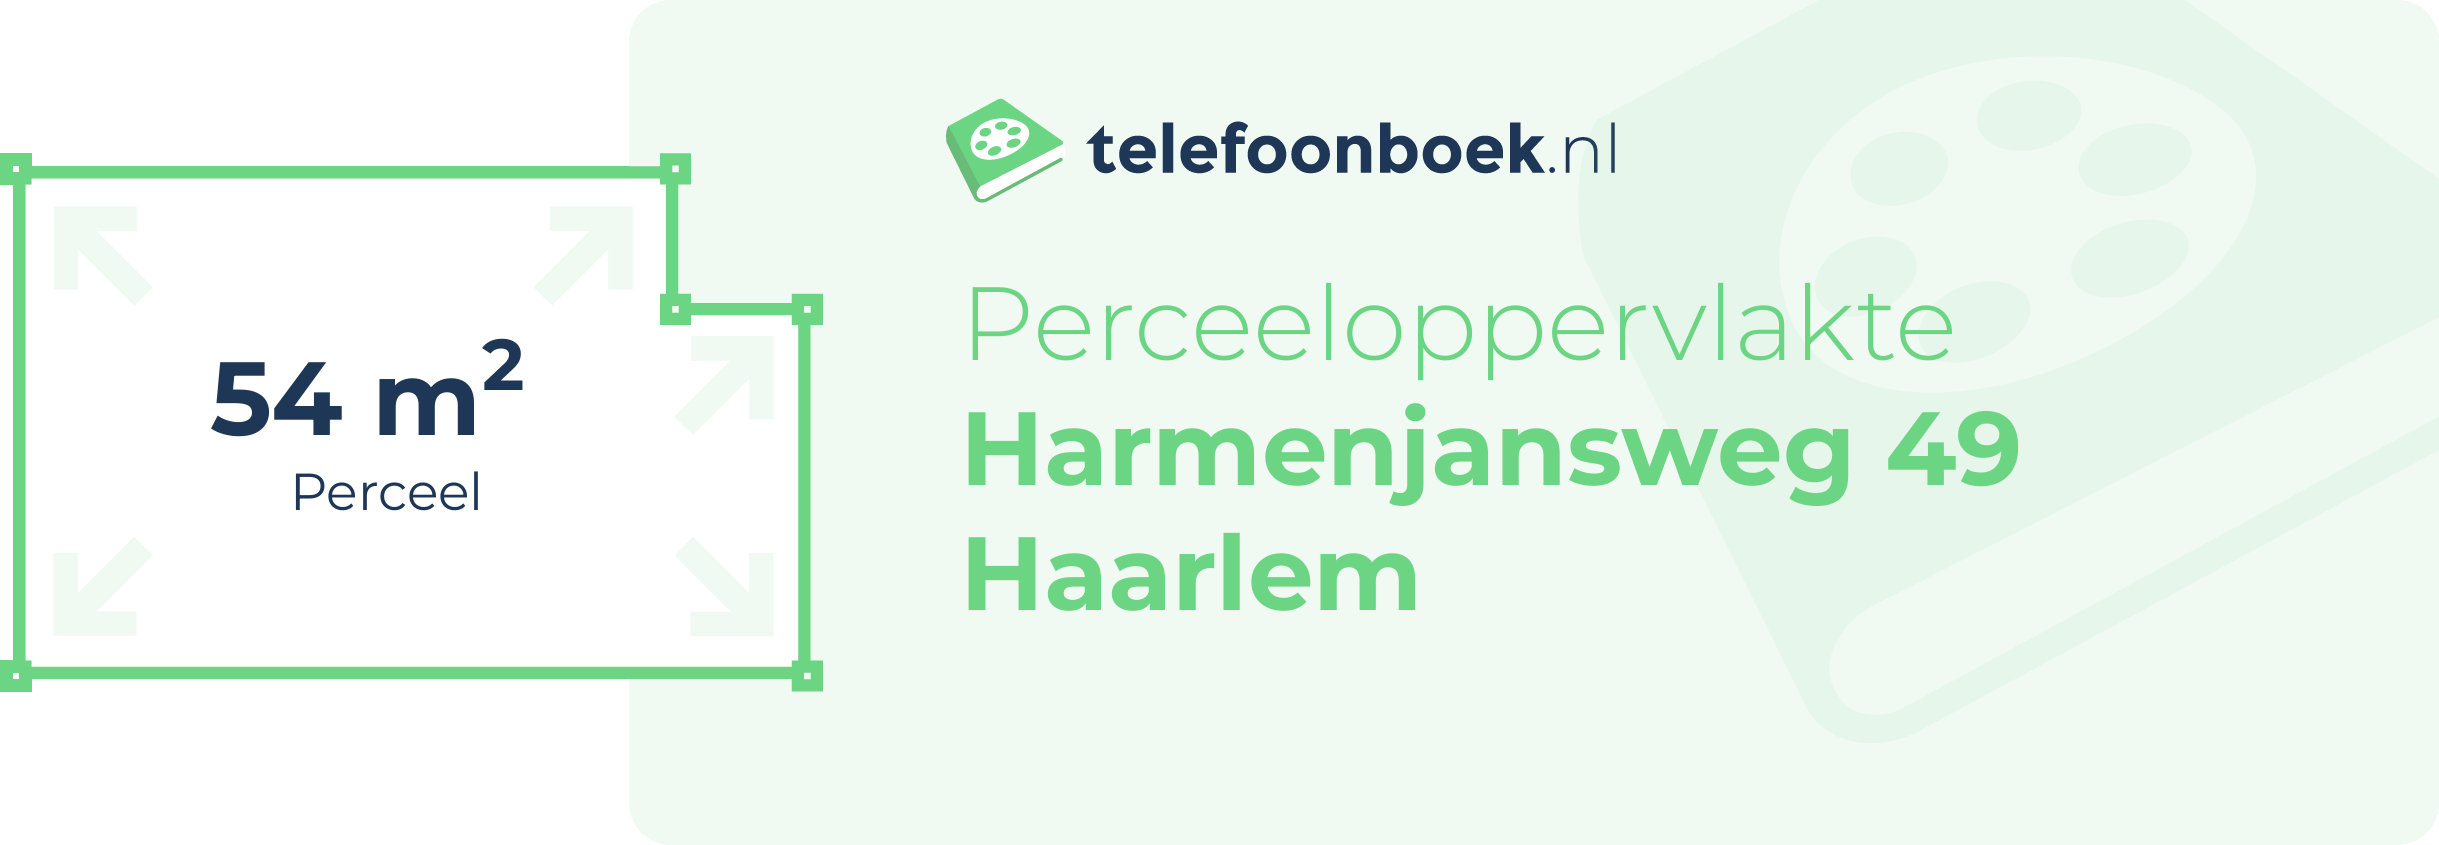 Perceeloppervlakte Harmenjansweg 49 Haarlem